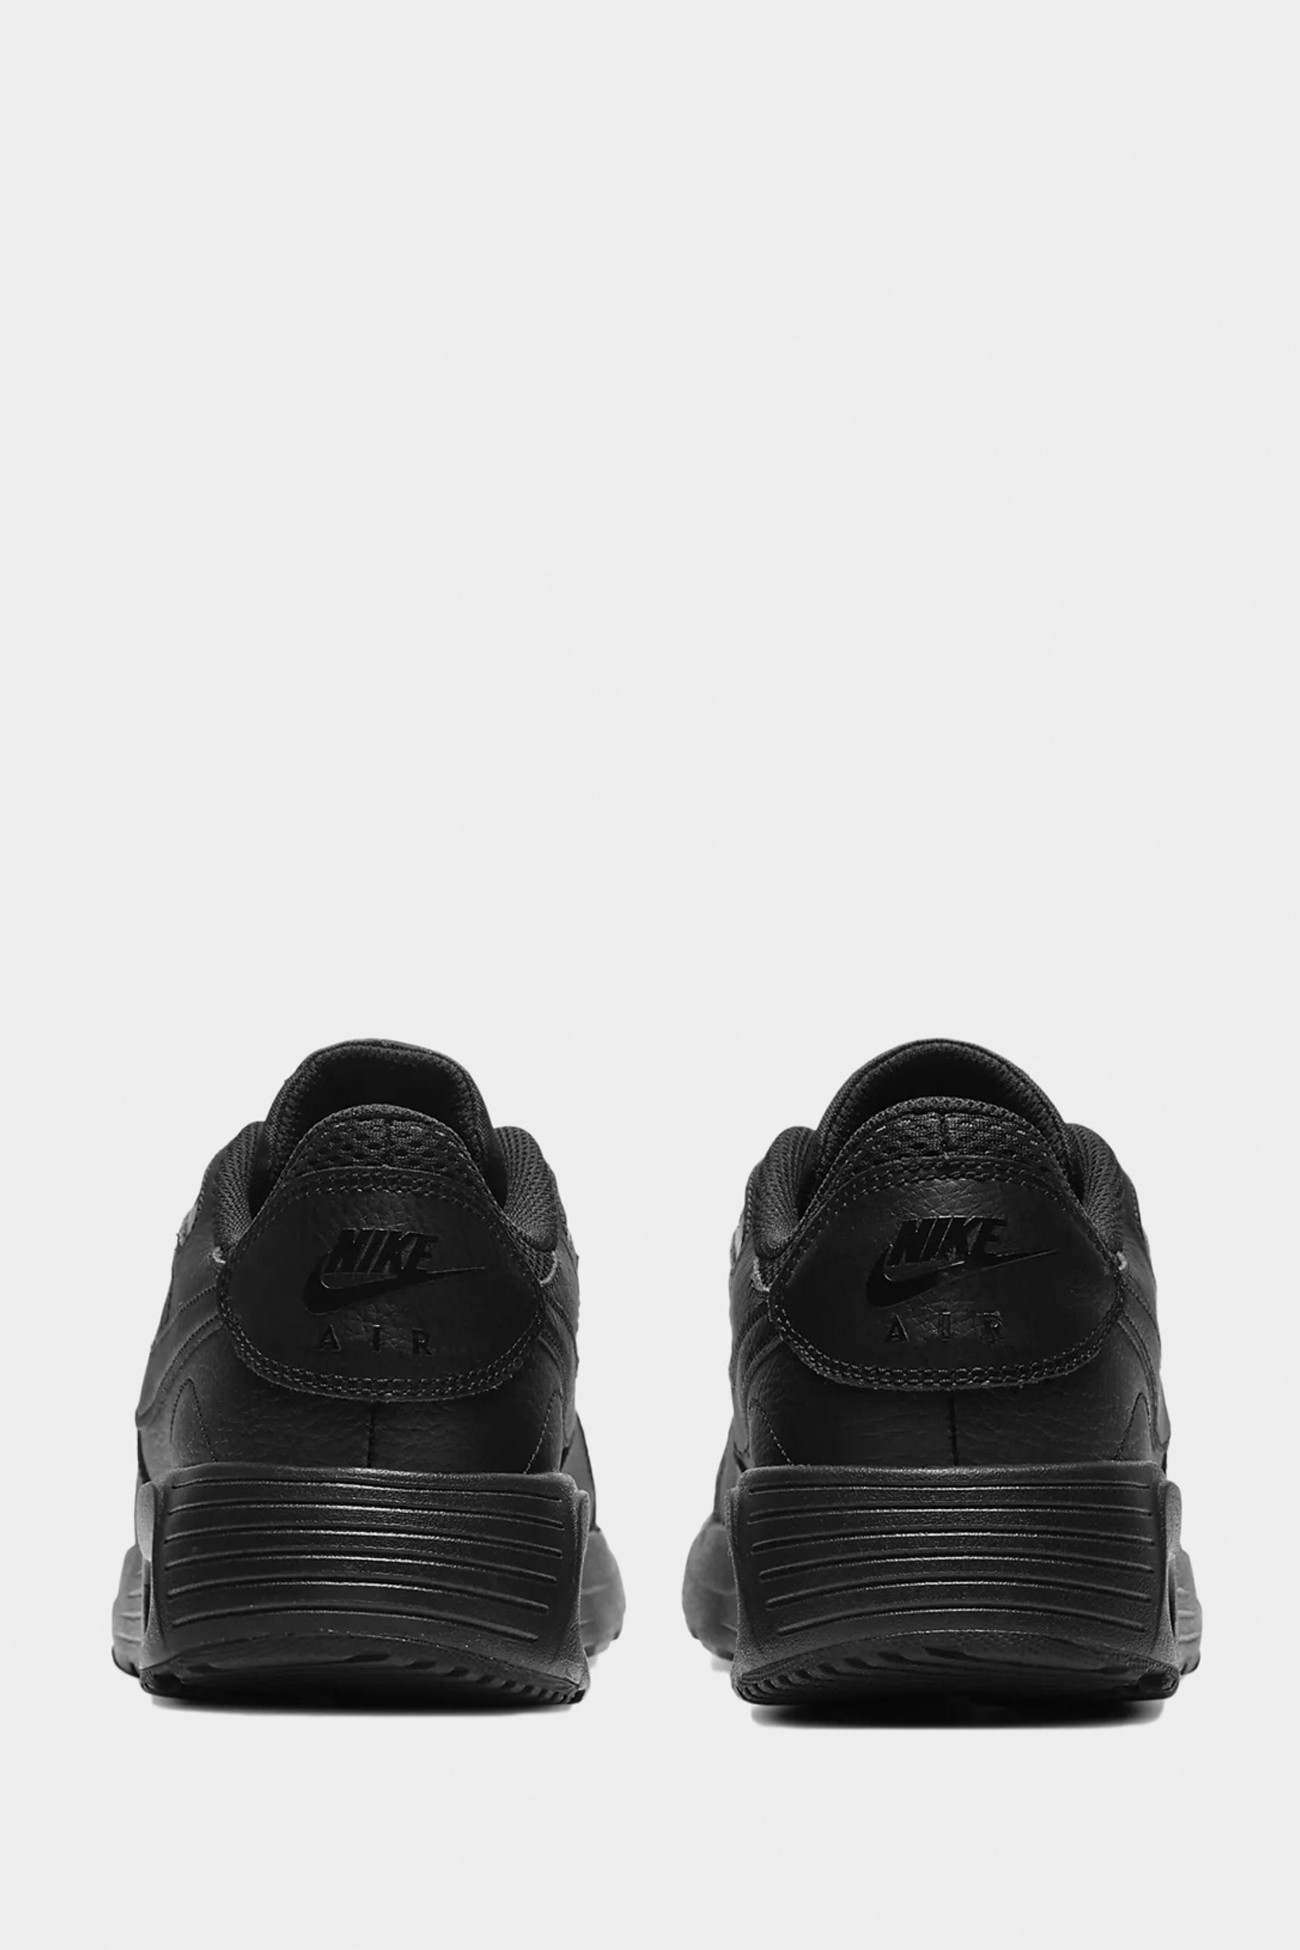 Кроссовки мужские Nike Air Max SC черные CW4555-003